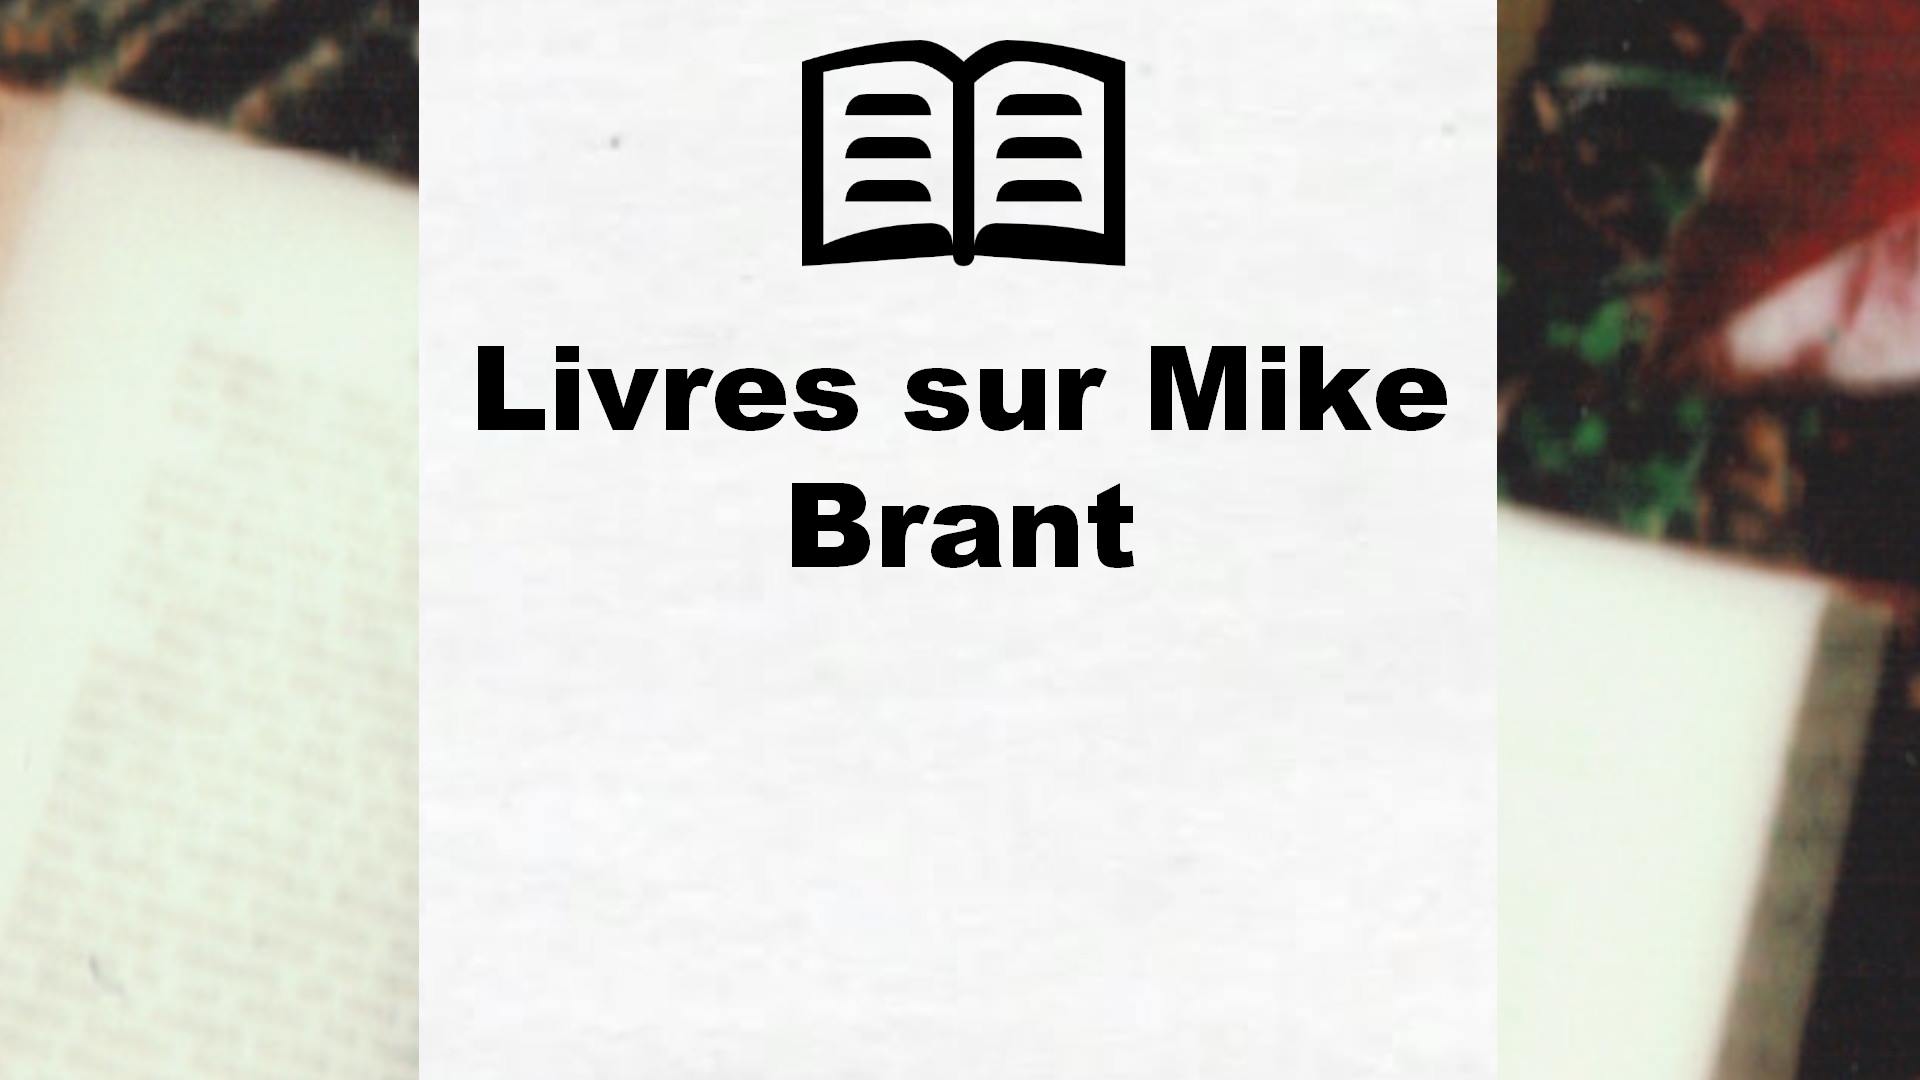 Livres sur Mike Brant